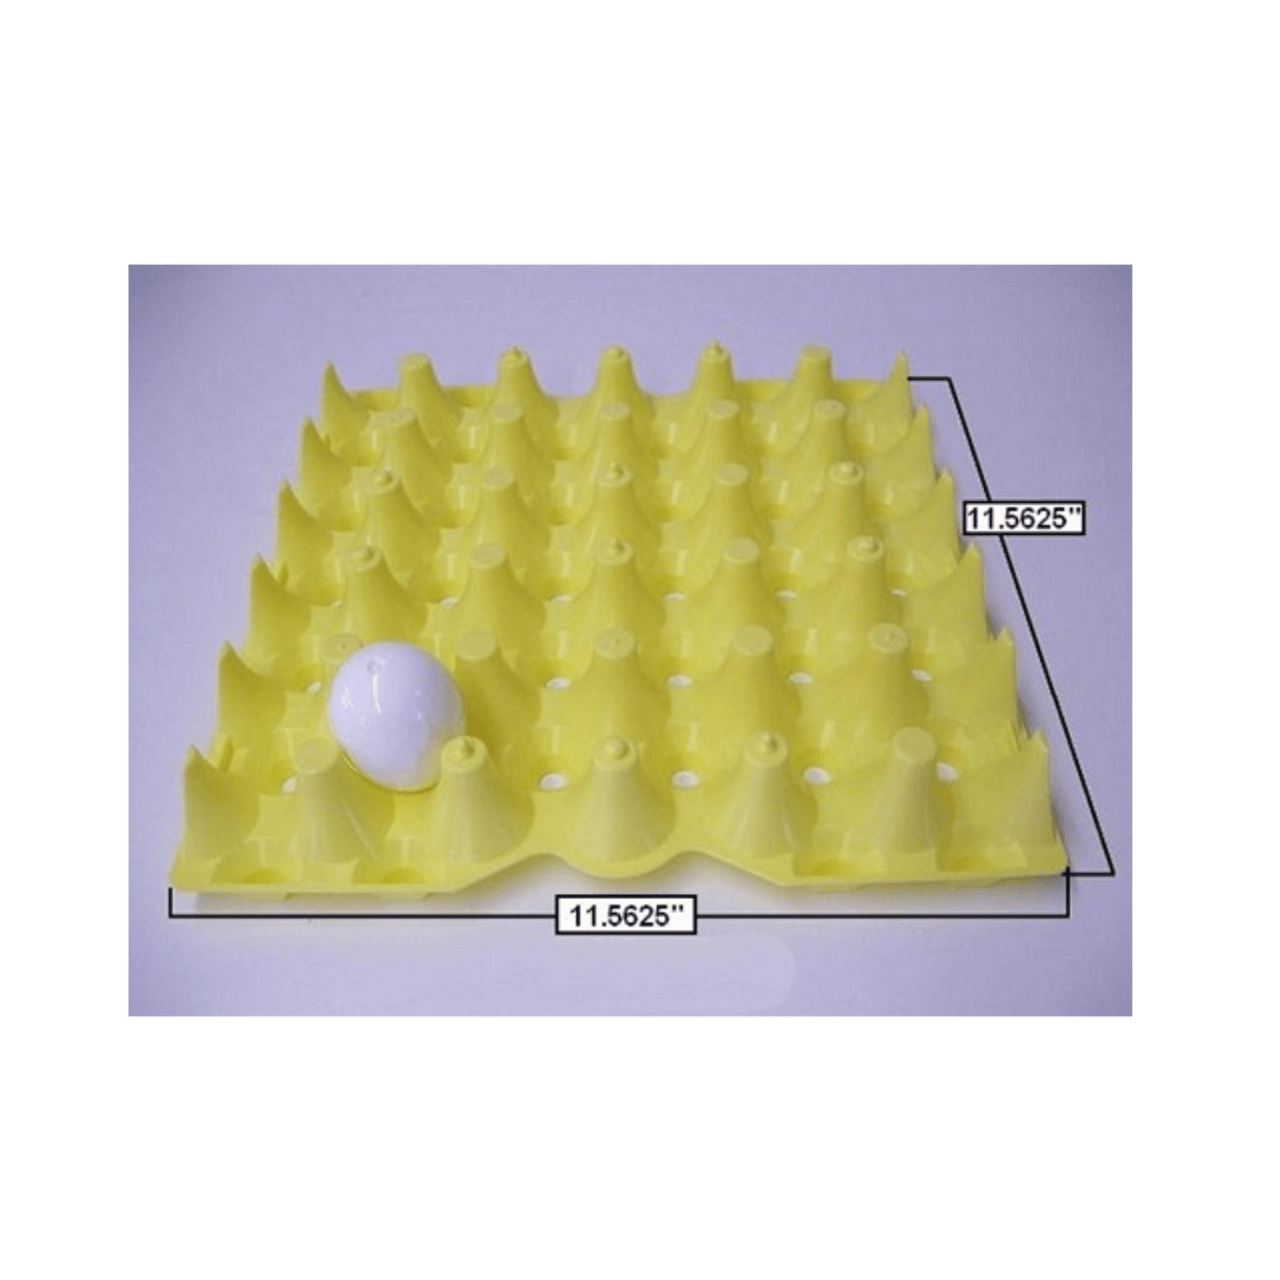 30-Egg Plastic Egg Tray in Green - Packs of 10 or 50